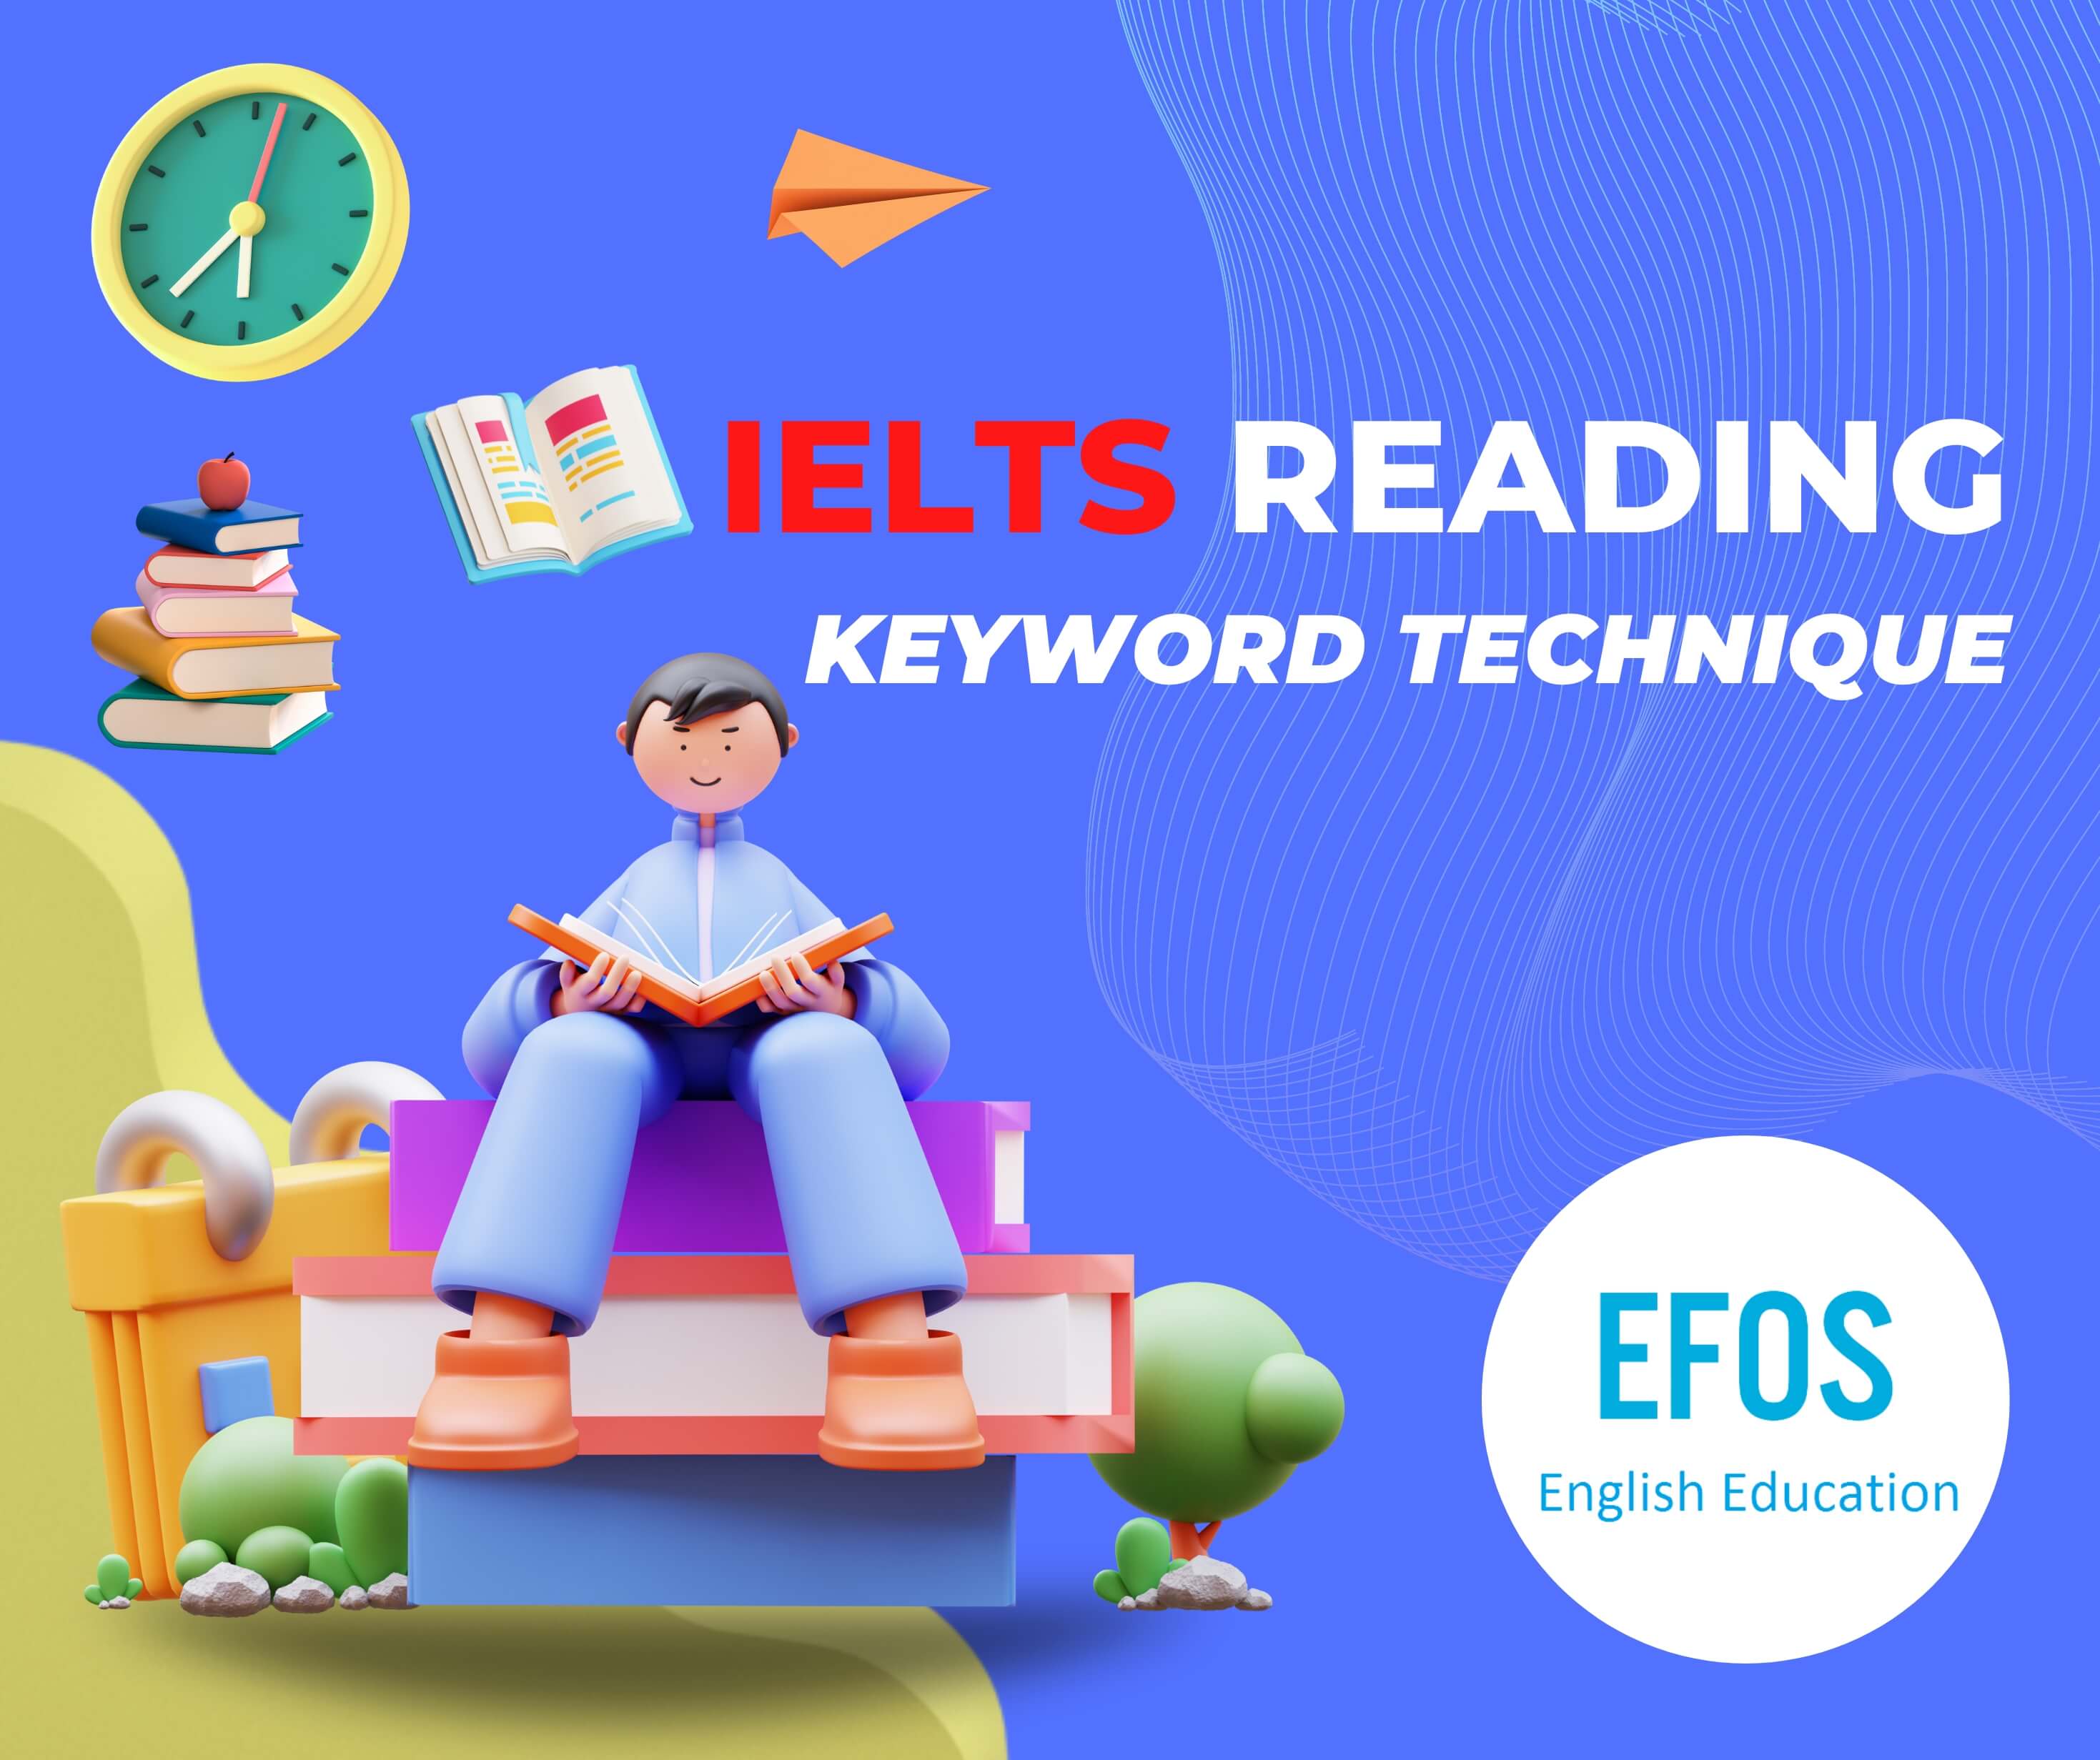 Phương pháp “Keyword Technique” trong IELTS Reading